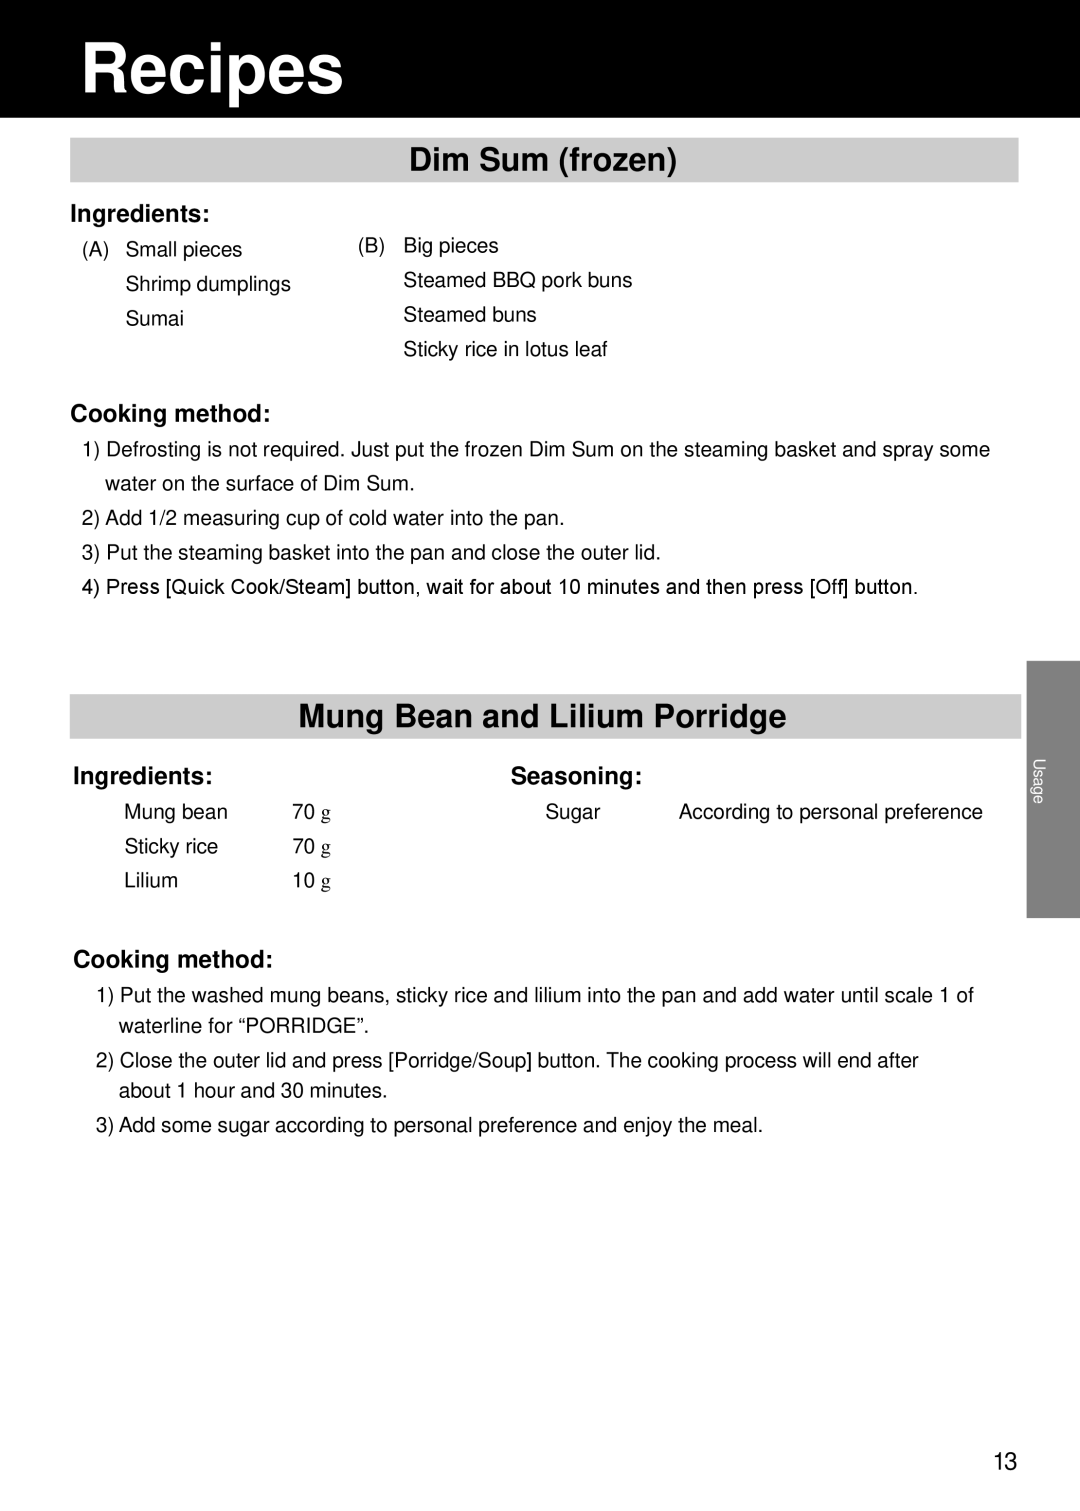 Panasonic SR/DF181 Dim Sum frozen, Mung Bean and Lilium Porridge, Recipes, Ingredients, Cooking method, Seasoning 